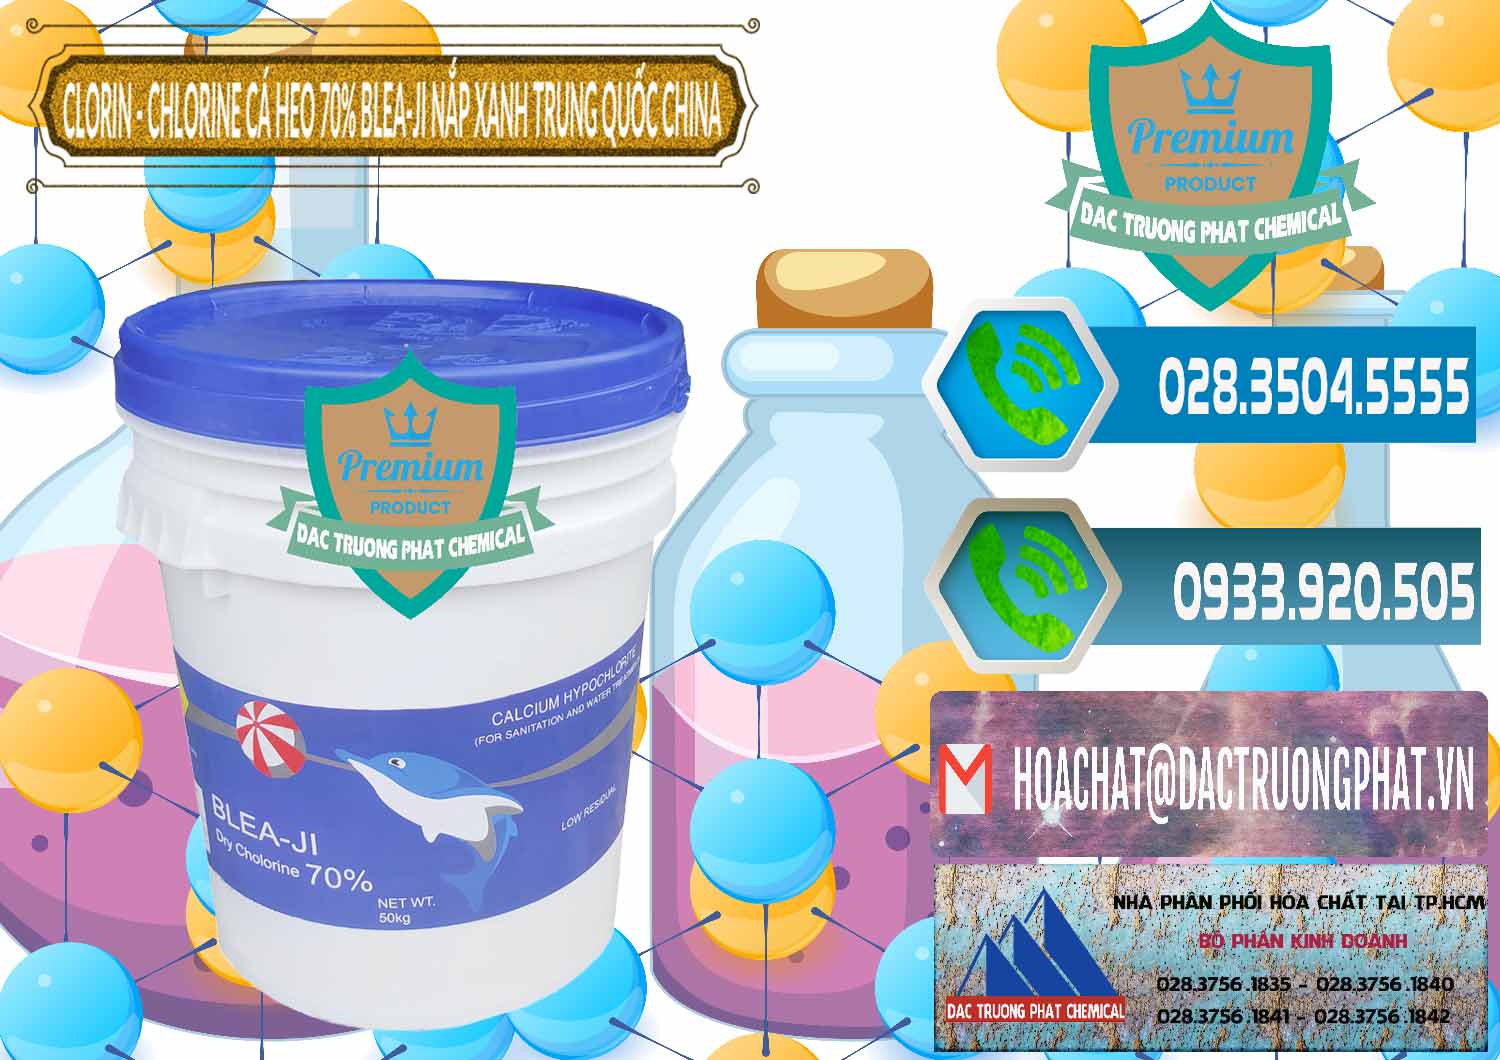 Nơi chuyên bán và phân phối Clorin - Chlorine Cá Heo 70% Cá Heo Blea-Ji Thùng Tròn Nắp Xanh Trung Quốc China - 0208 - Đơn vị nhập khẩu & cung cấp hóa chất tại TP.HCM - congtyhoachat.net